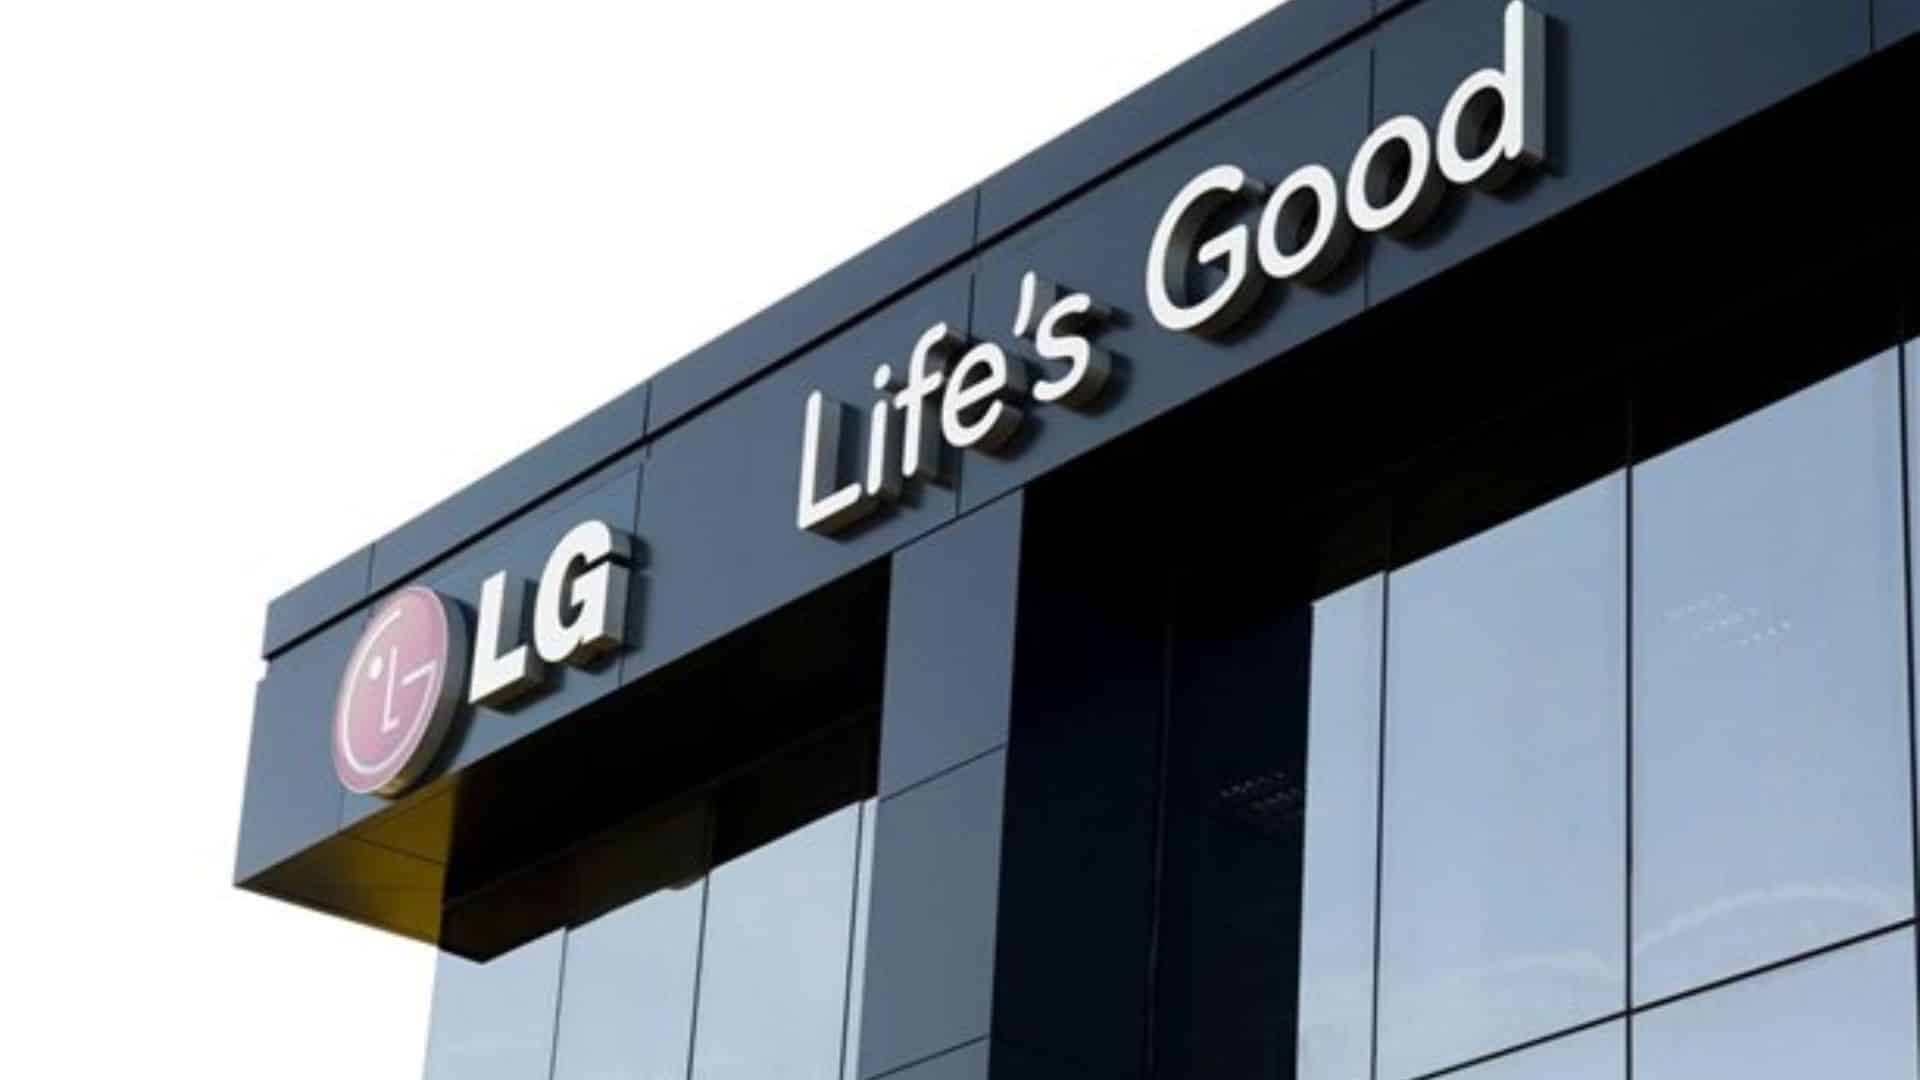 LG Reduce sus Emisiones de CO2 y busca un Futuro Sostenible